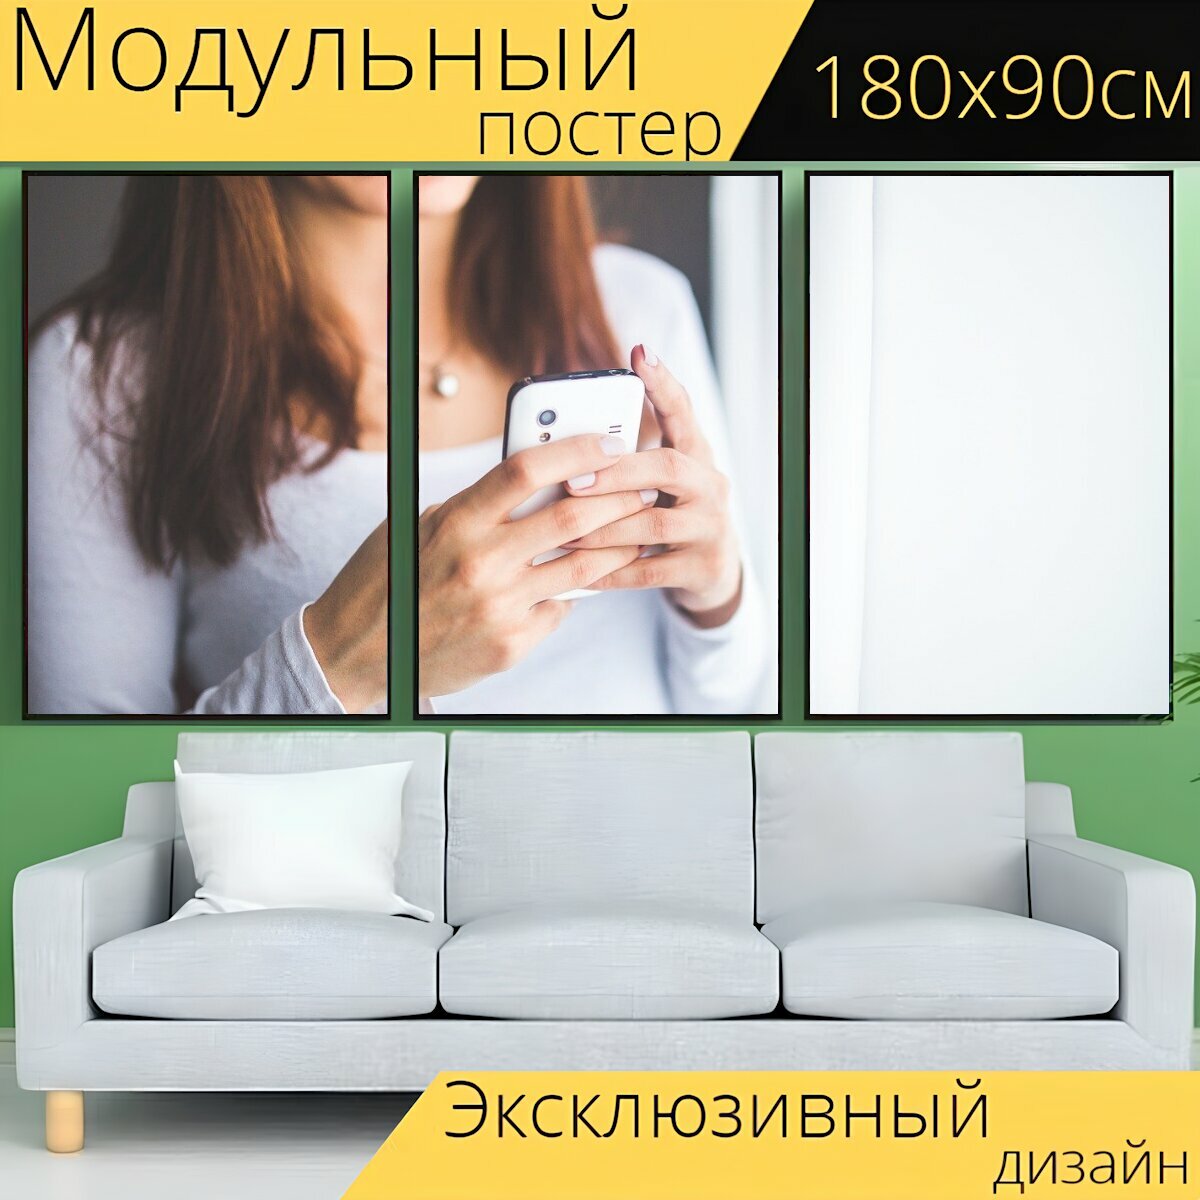 Модульный постер "Мобильный телефон, мобильный, смартфон" 180 x 90 см. для интерьера